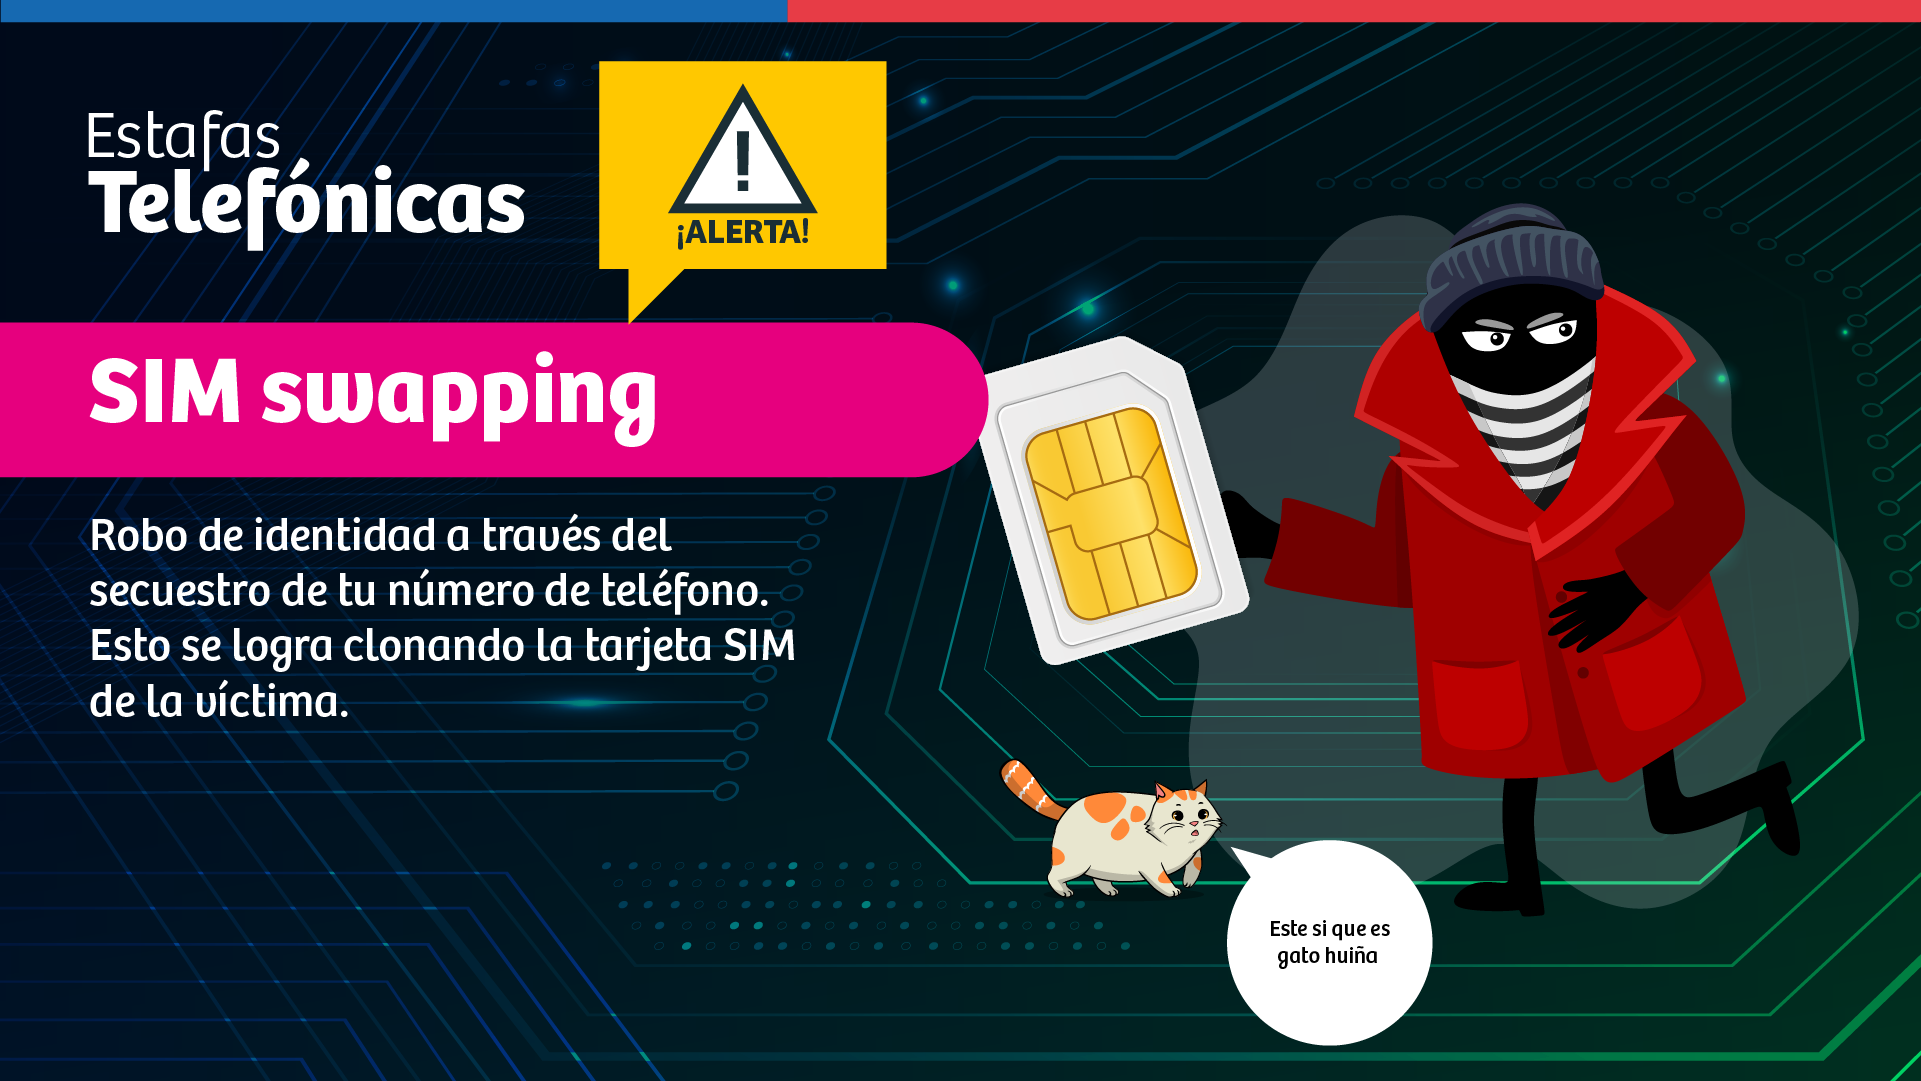 El SIM swapping es el robo de identidad a través del secuestro de tu número de teléfono. Esto se logra clonando la tarjeta SIM de la víctima.